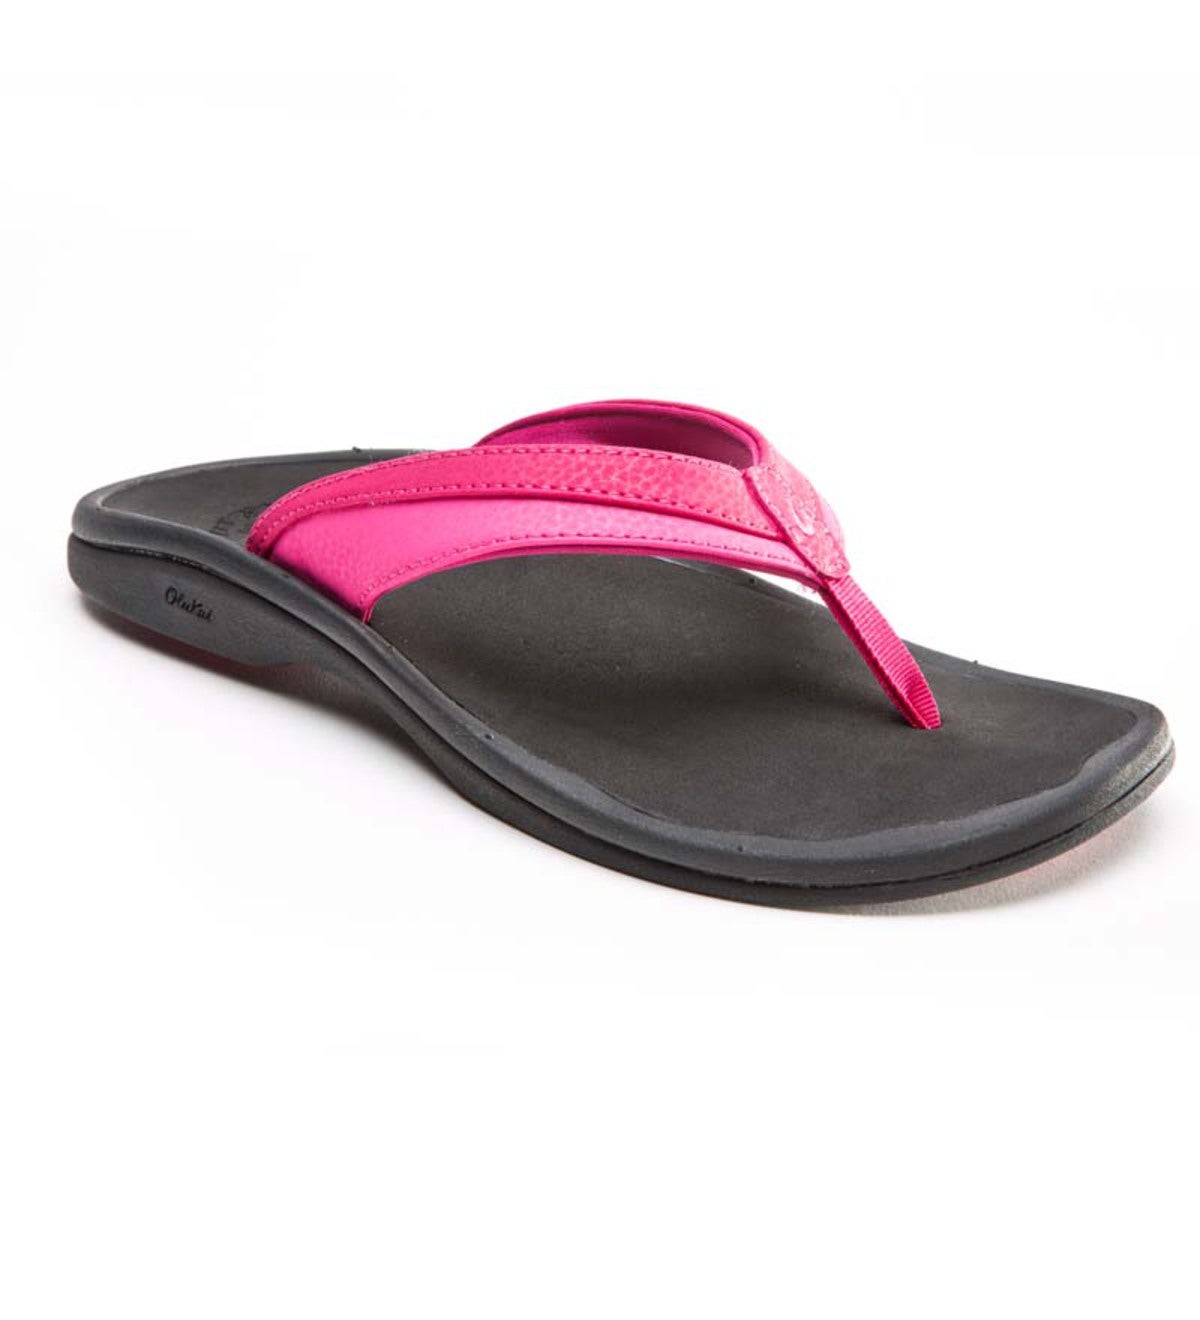 Sale! Women's OluKai Ohana Flip-Flop Sandals